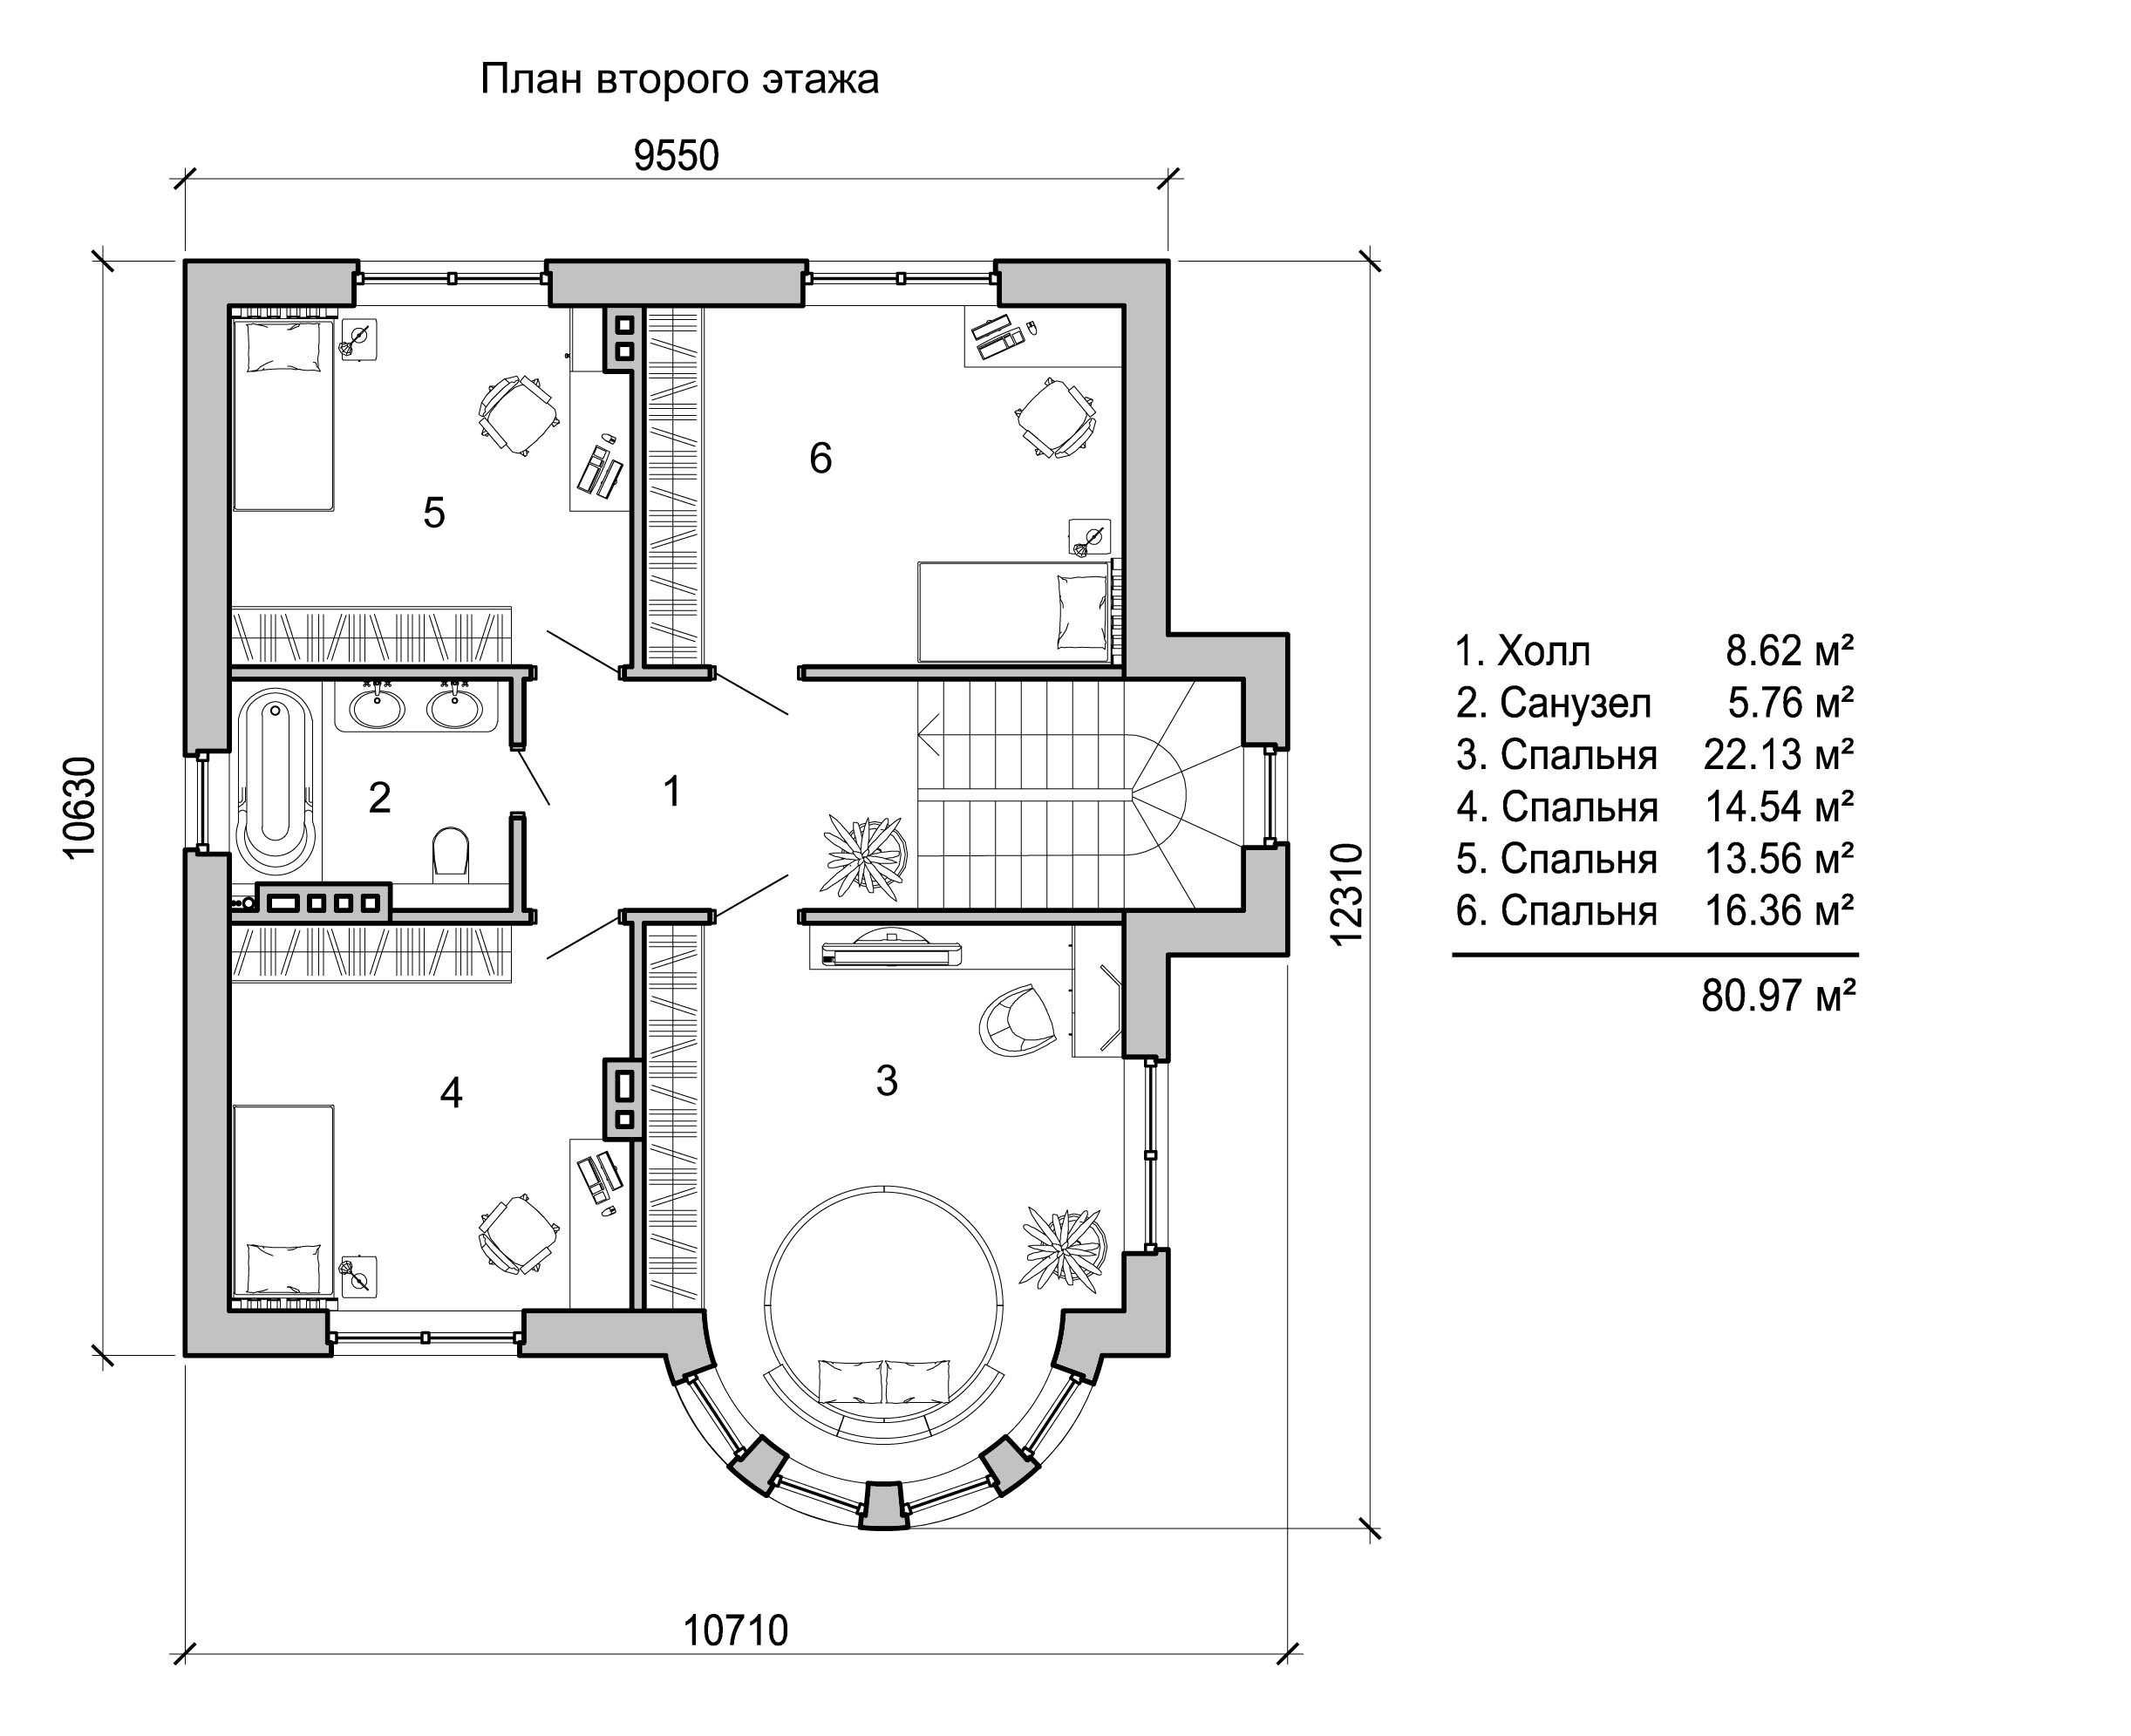 Схема домов 2 этажа. Планировка двухэтажного дома из кирпича 1 этаж. План двухэтажного дома чертеж. Чертеж двухэтажного коттеджа с размерами. Схема частного 2 этажного дома.